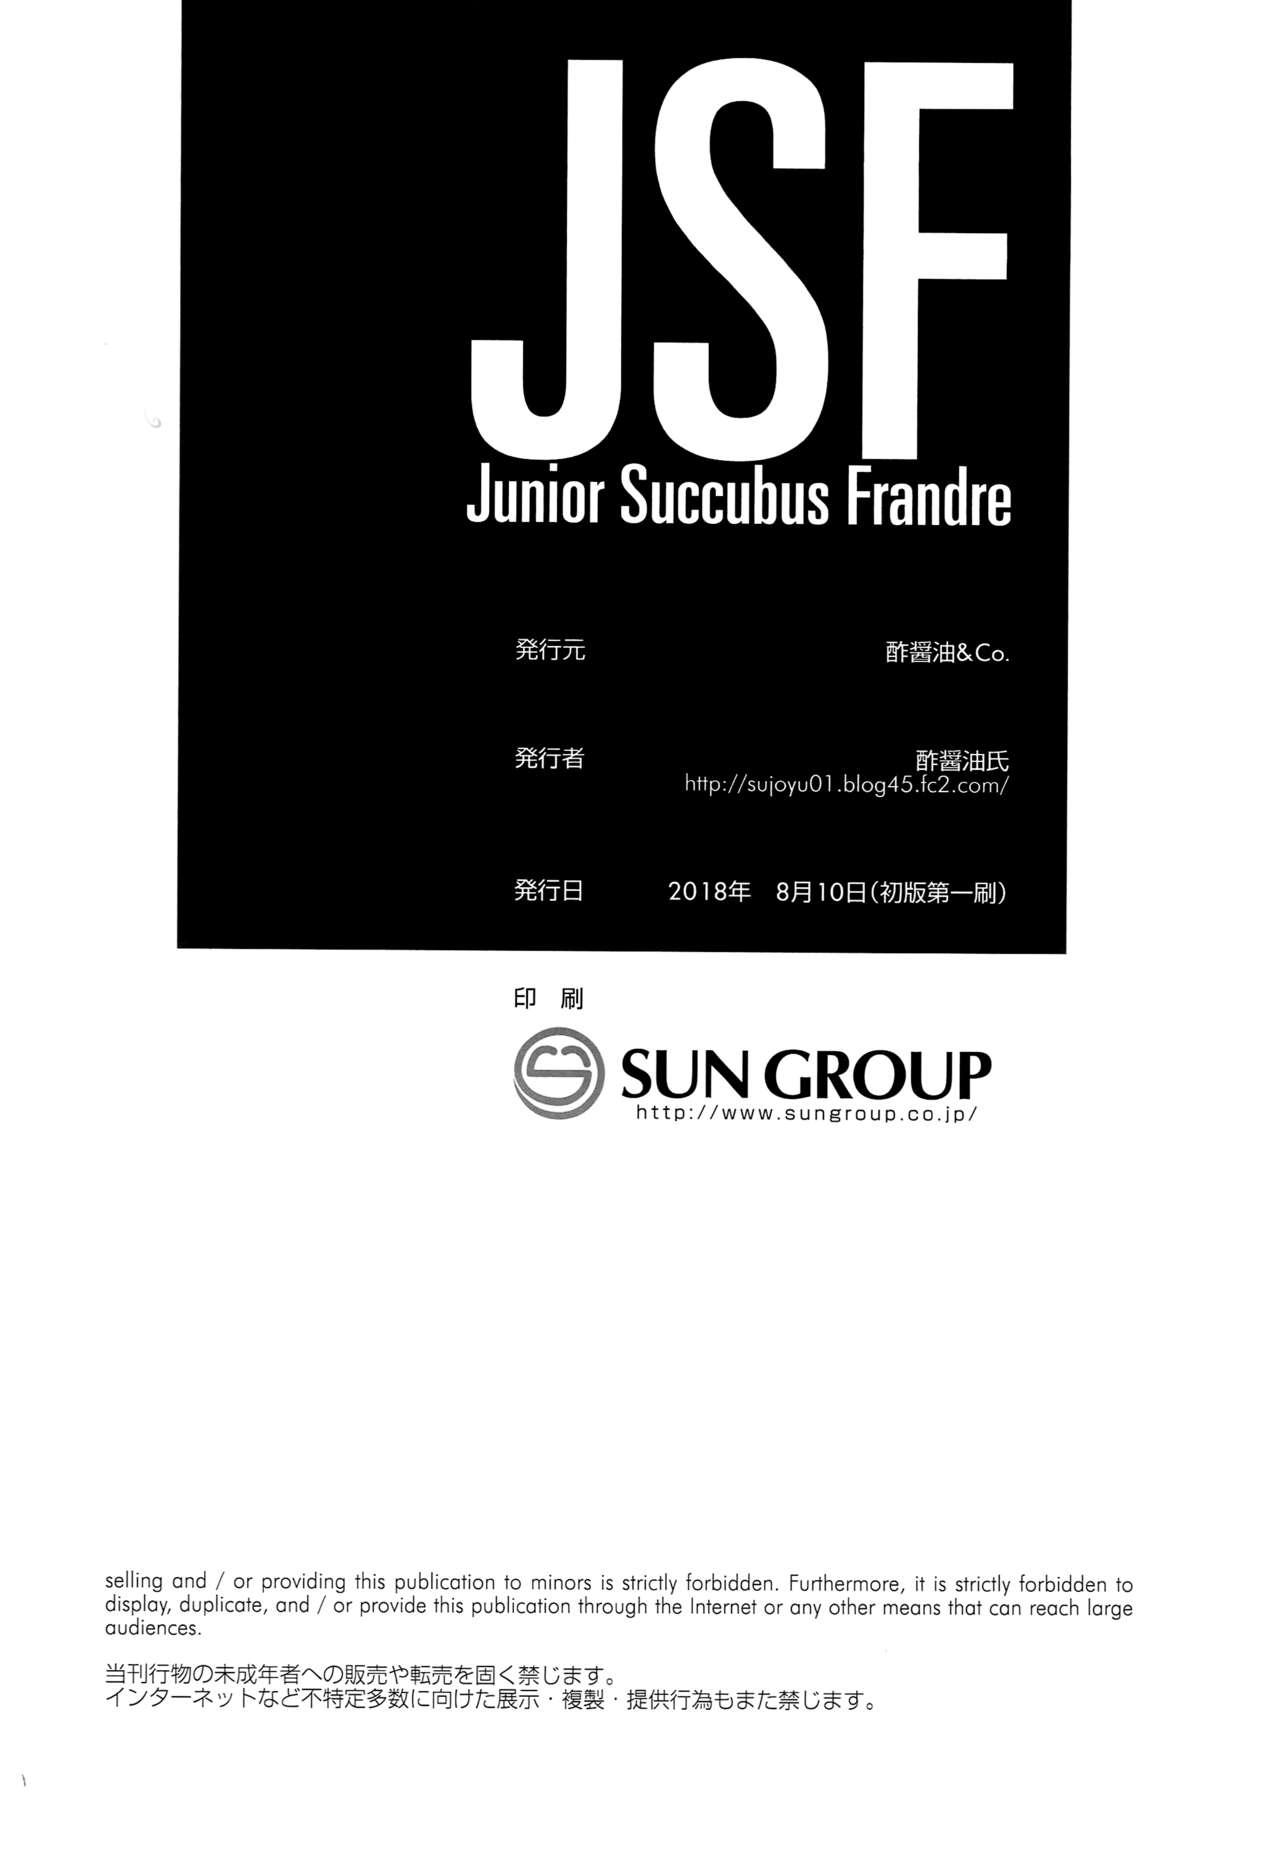 JSF Junior Succubus Frandre 16